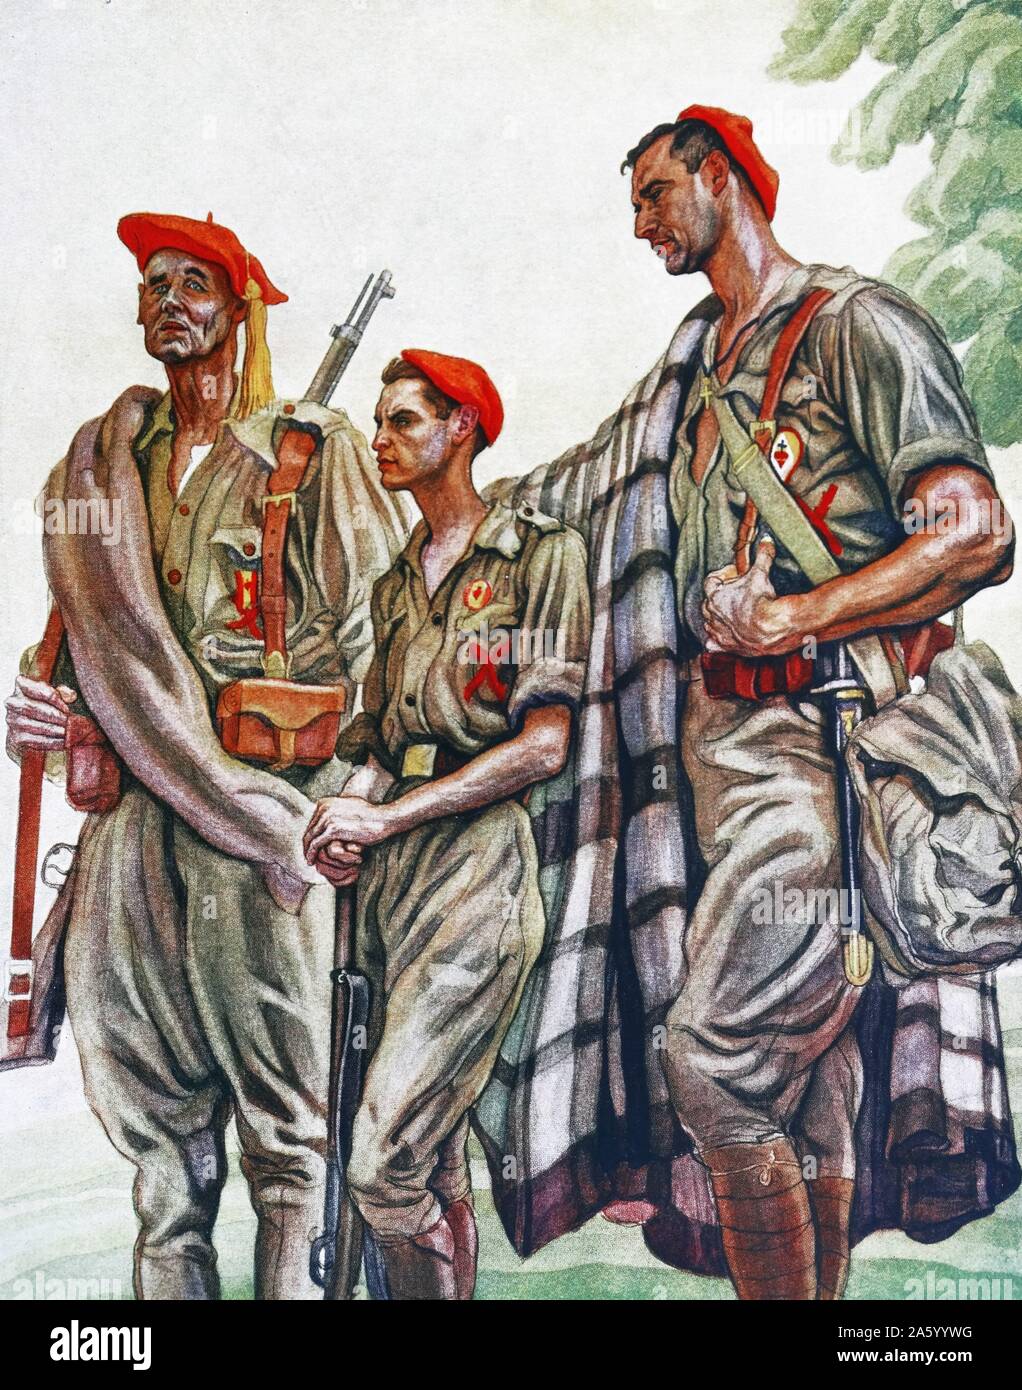 Illustration von Carlos Saenz De Tejada Darstellung drei Generationen der Carlist nationalistischen Kämpfer während des spanischen Bürgerkriegs. Datiert 1936 Stockfoto